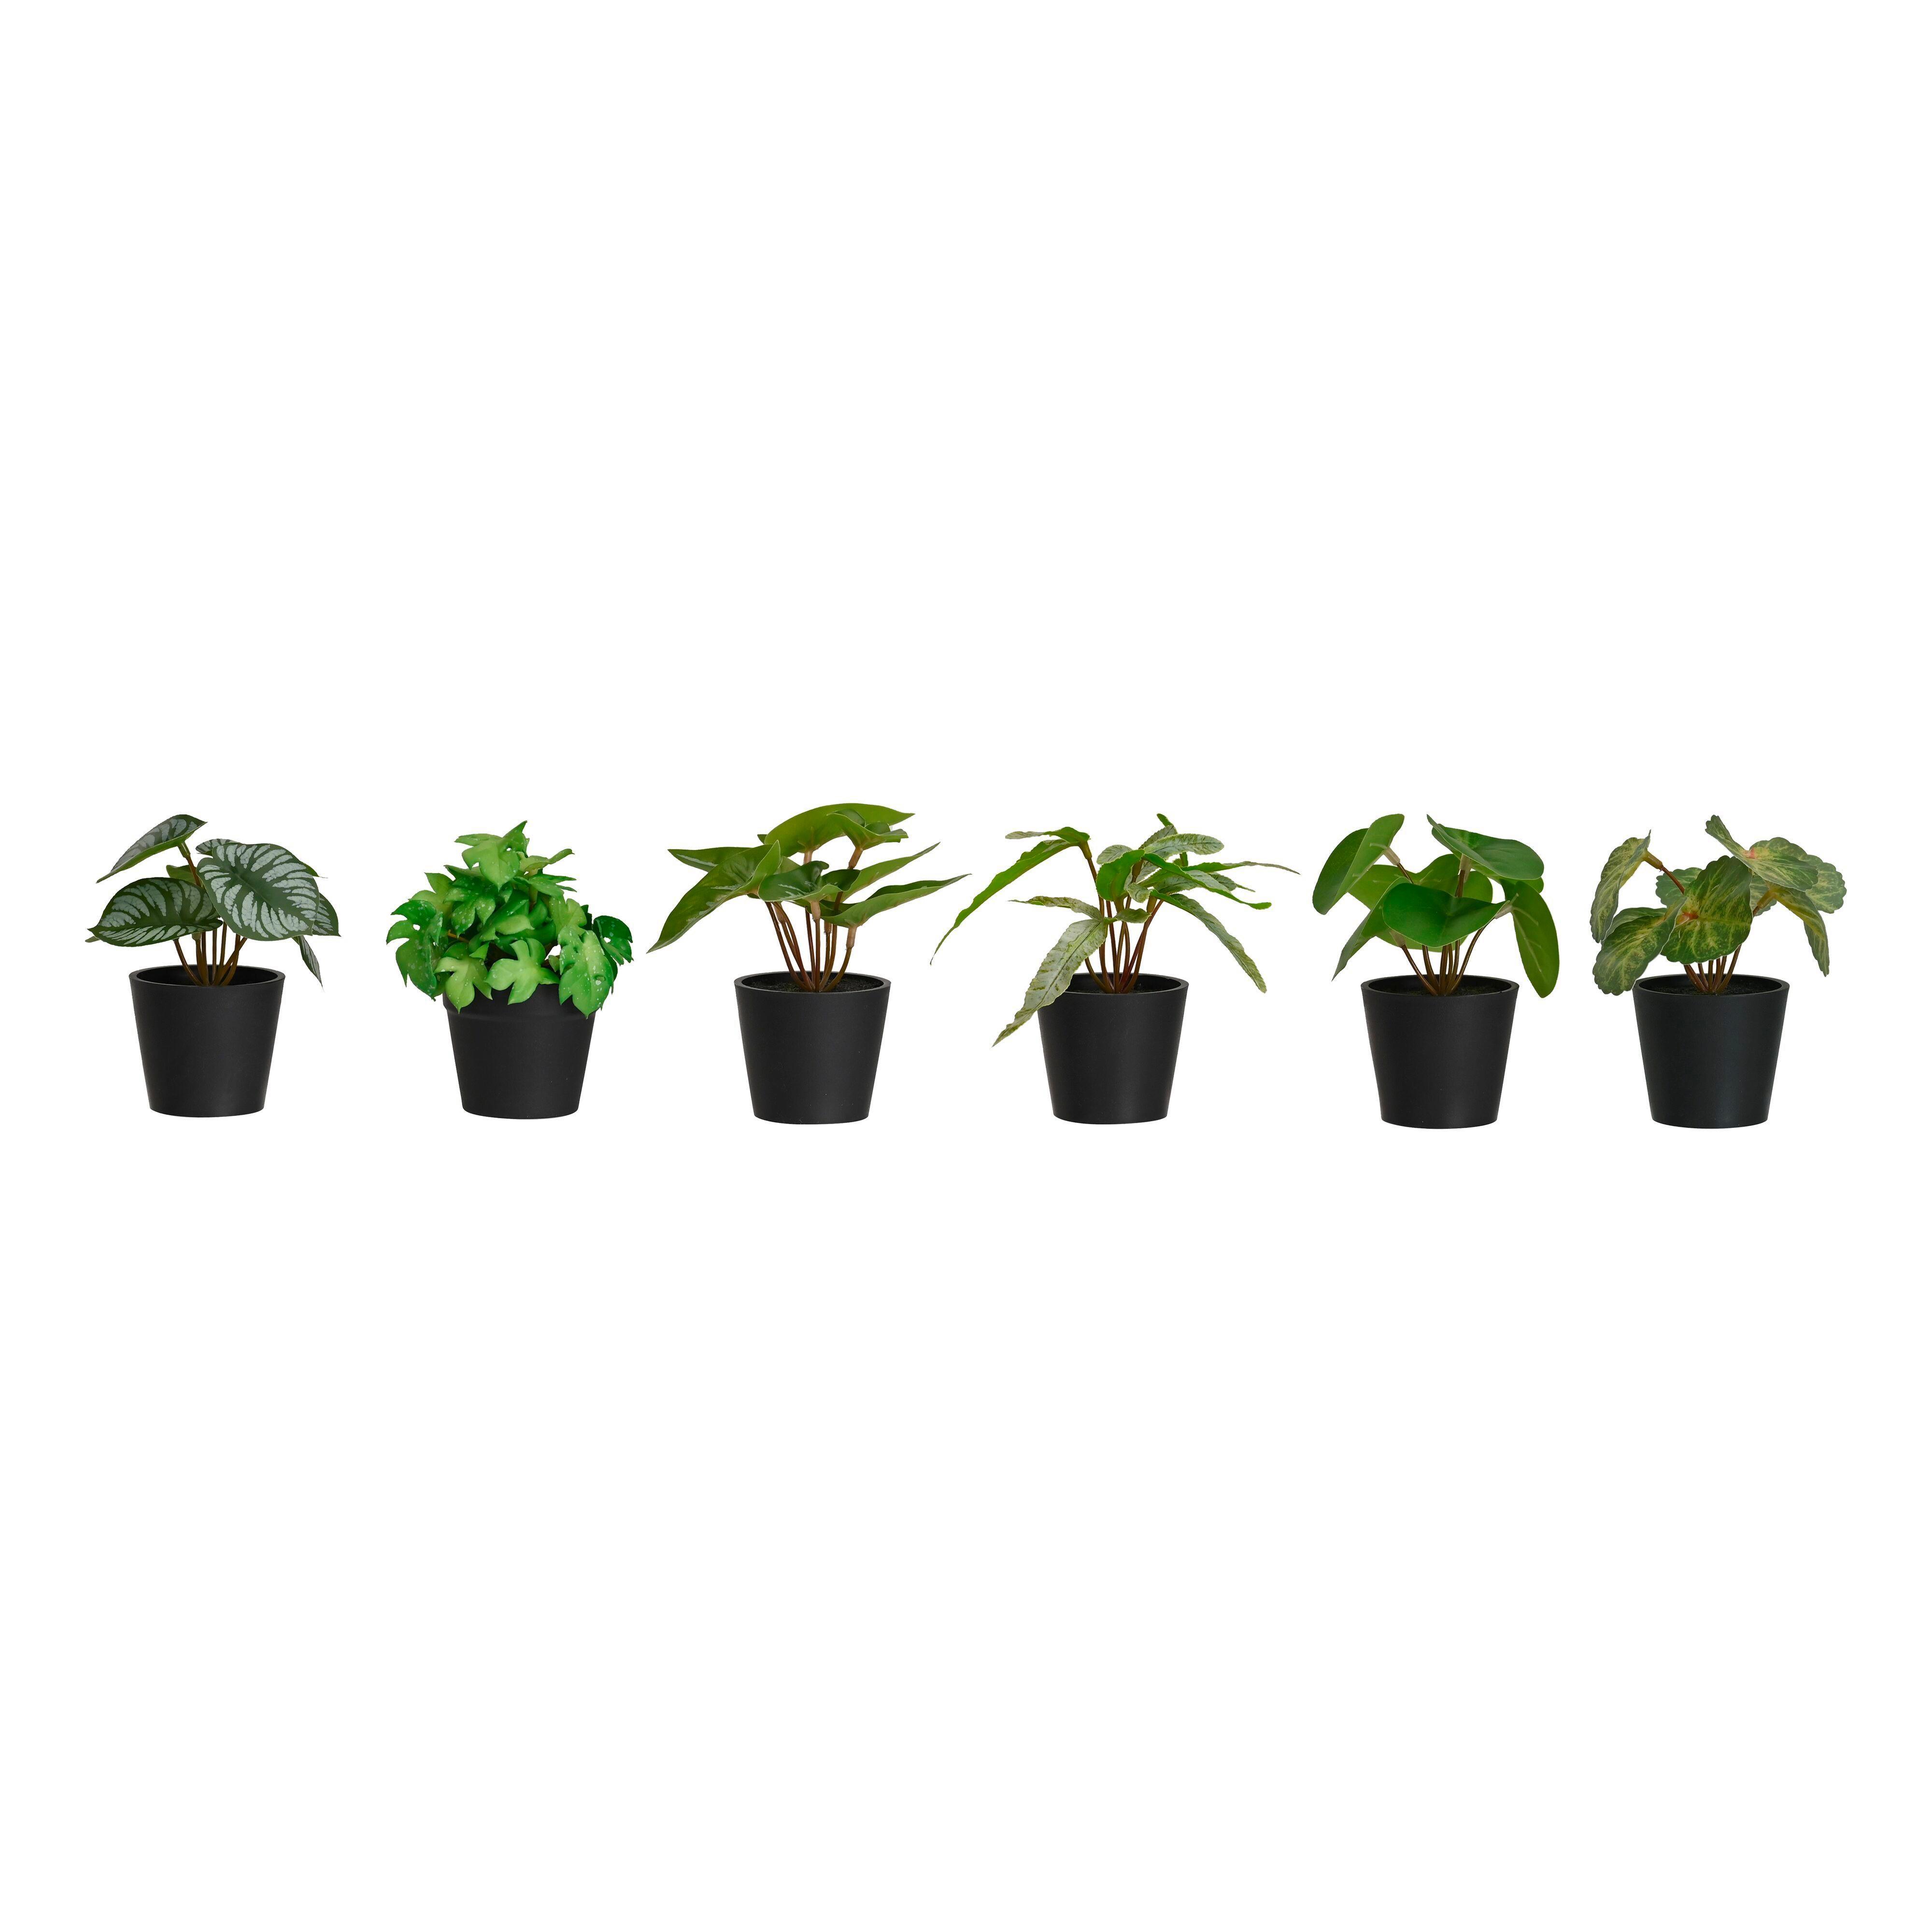 Kunstpflanze Pflanzengesteck in Grün, 6 Designs sortiert - Schwarz/Grün, Kunststoff (7/13cm) - Modern Living